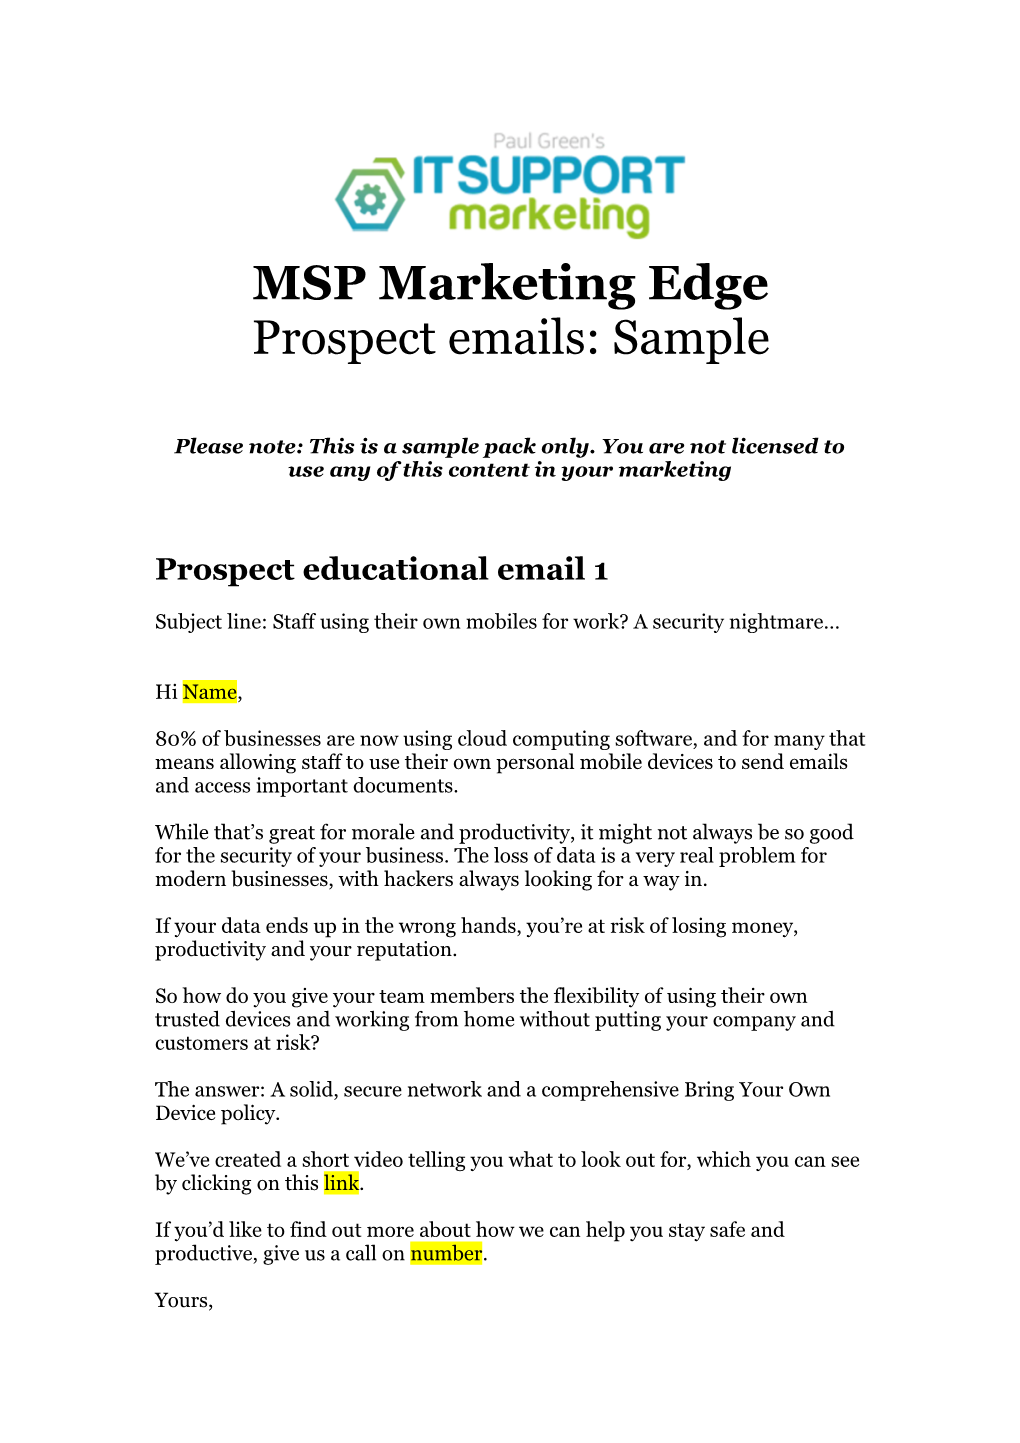 Prospect Emails: Sample